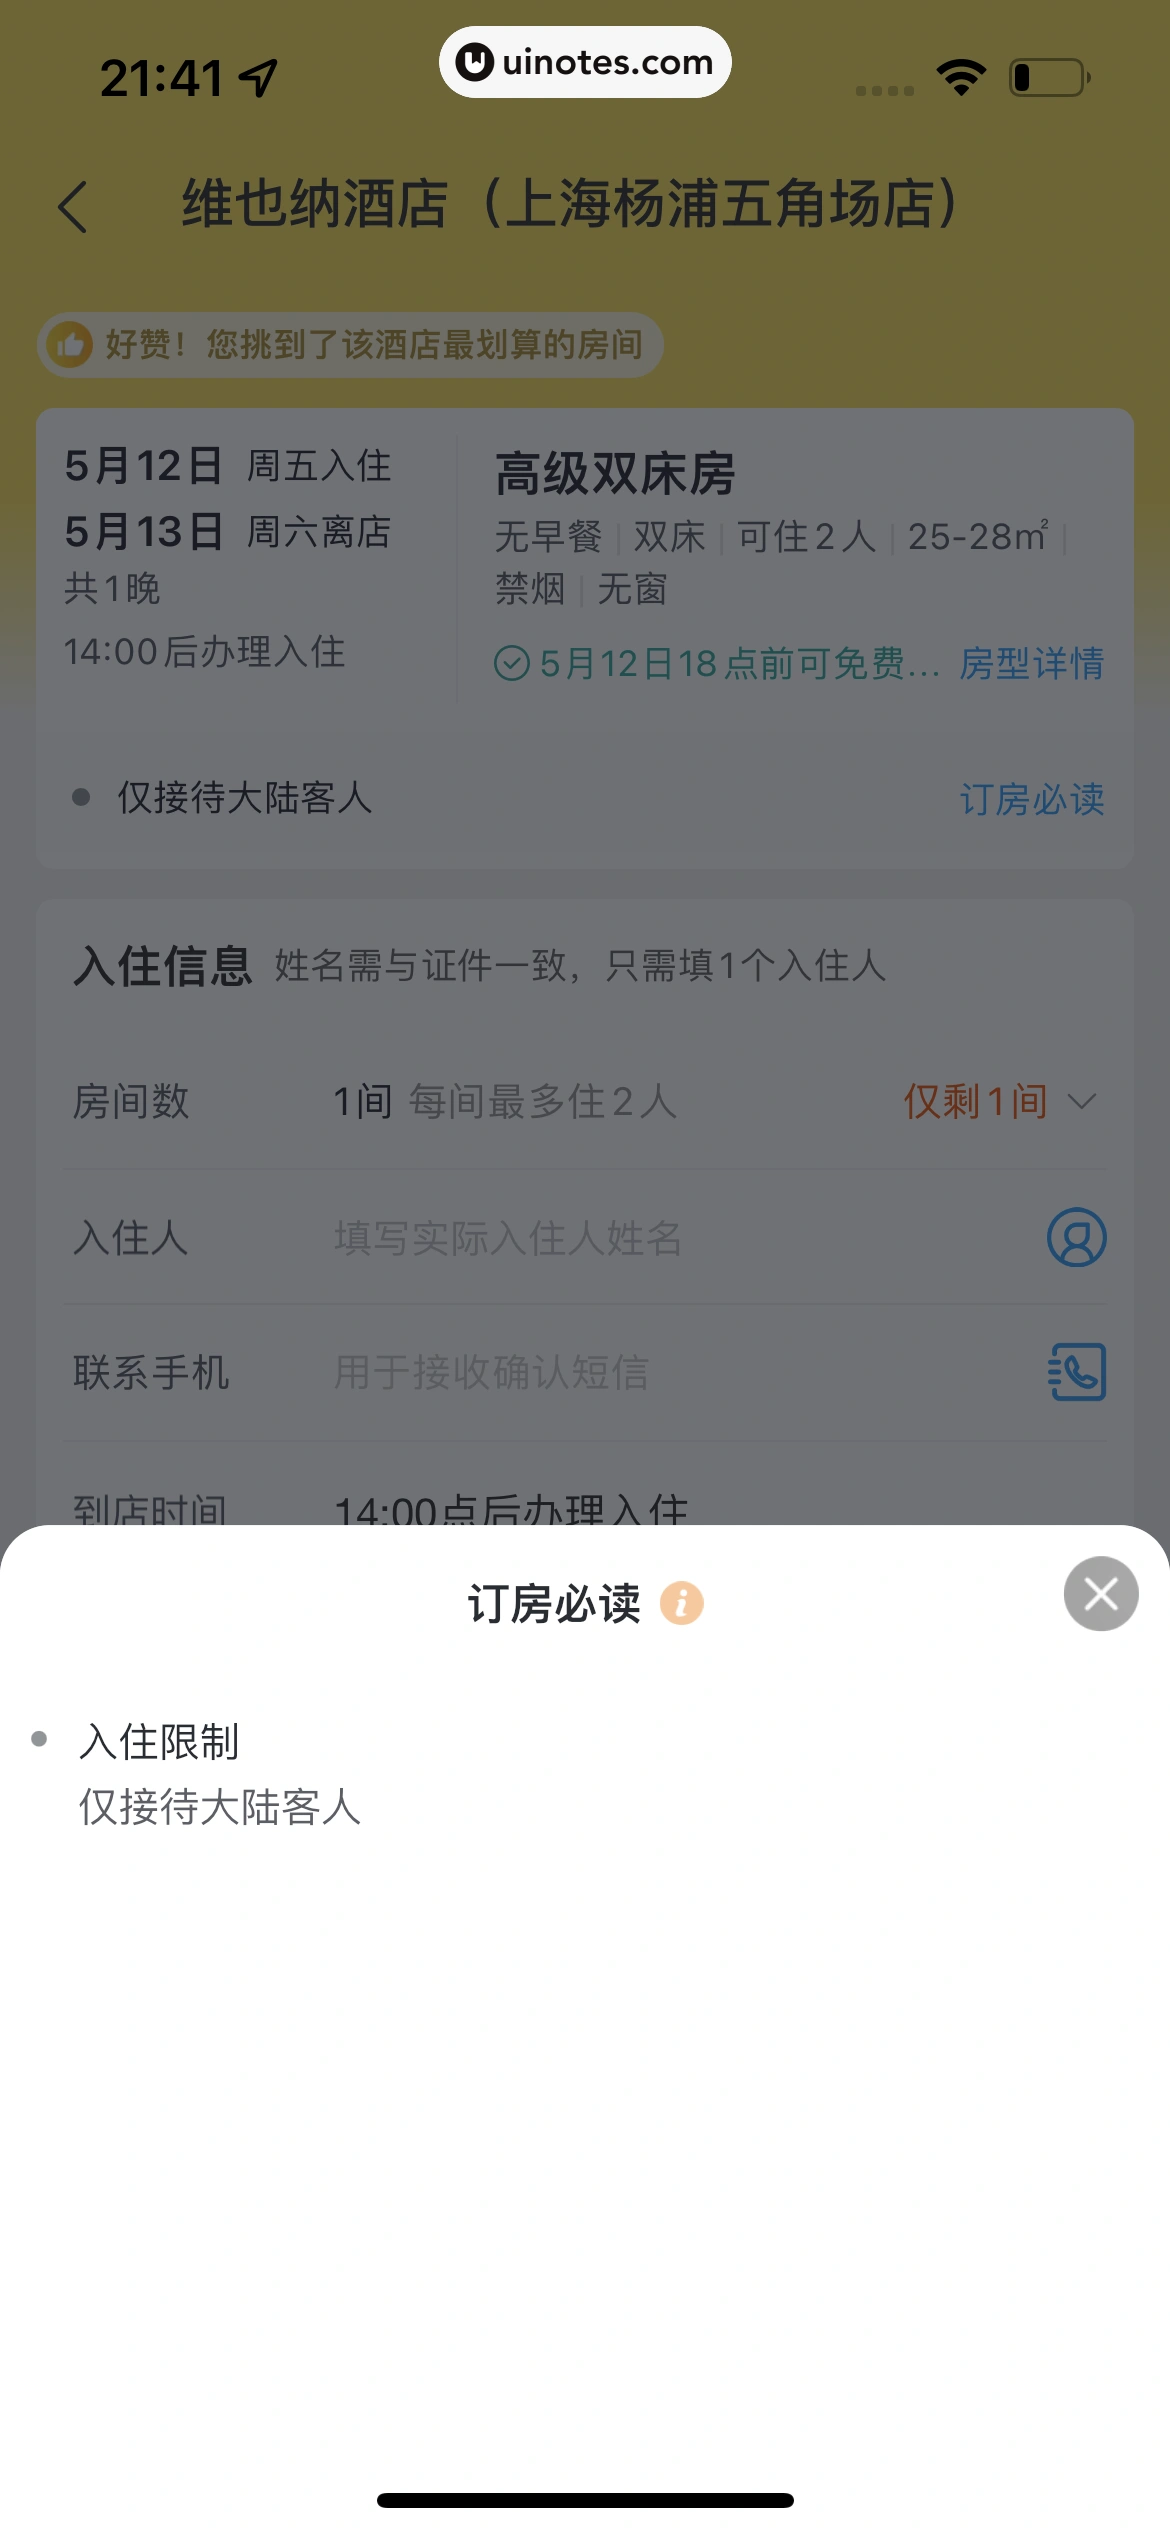 飞猪旅行 App 截图 216 - UI Notes